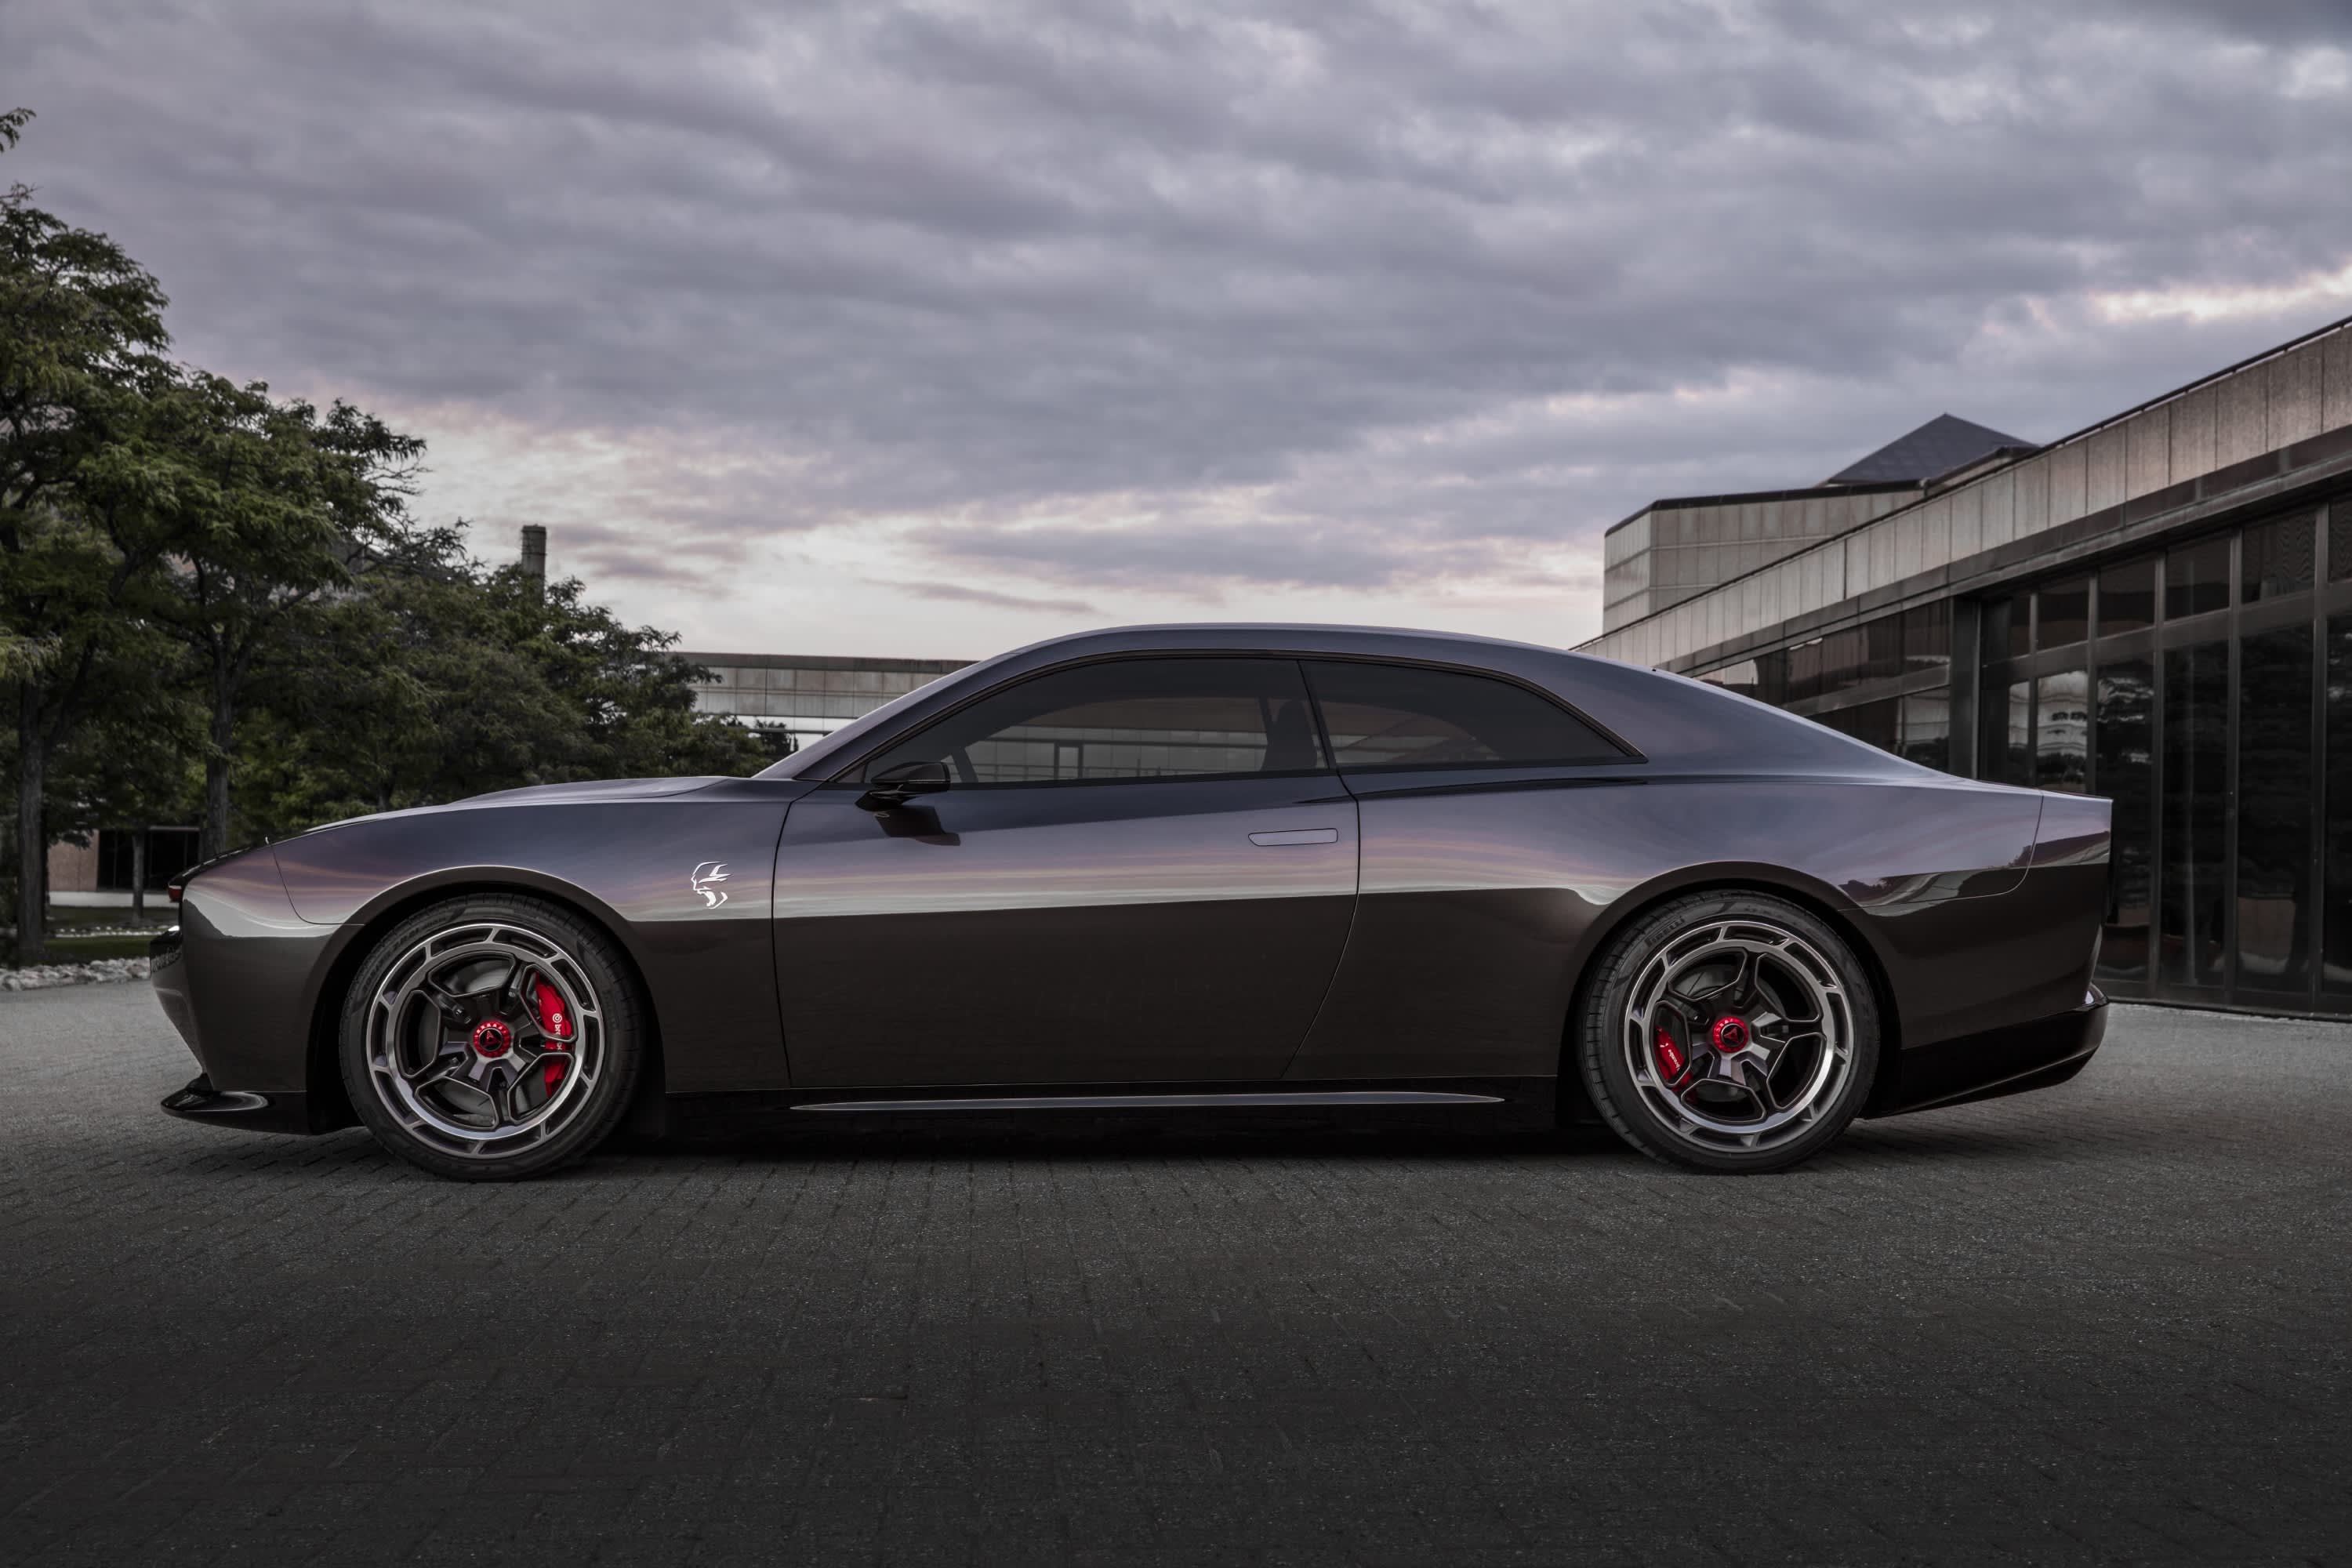 Dodge unveils electric concept muscle car